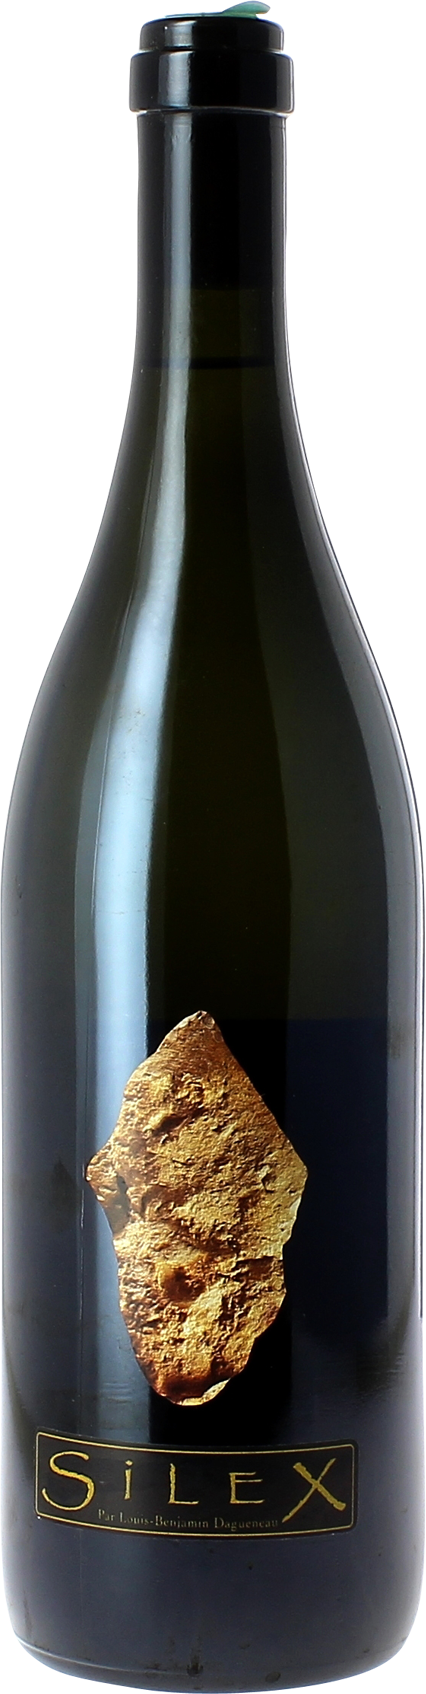 Pouilly fume silex didier dagueneau 2000  Vin de France, Valle de la Loire